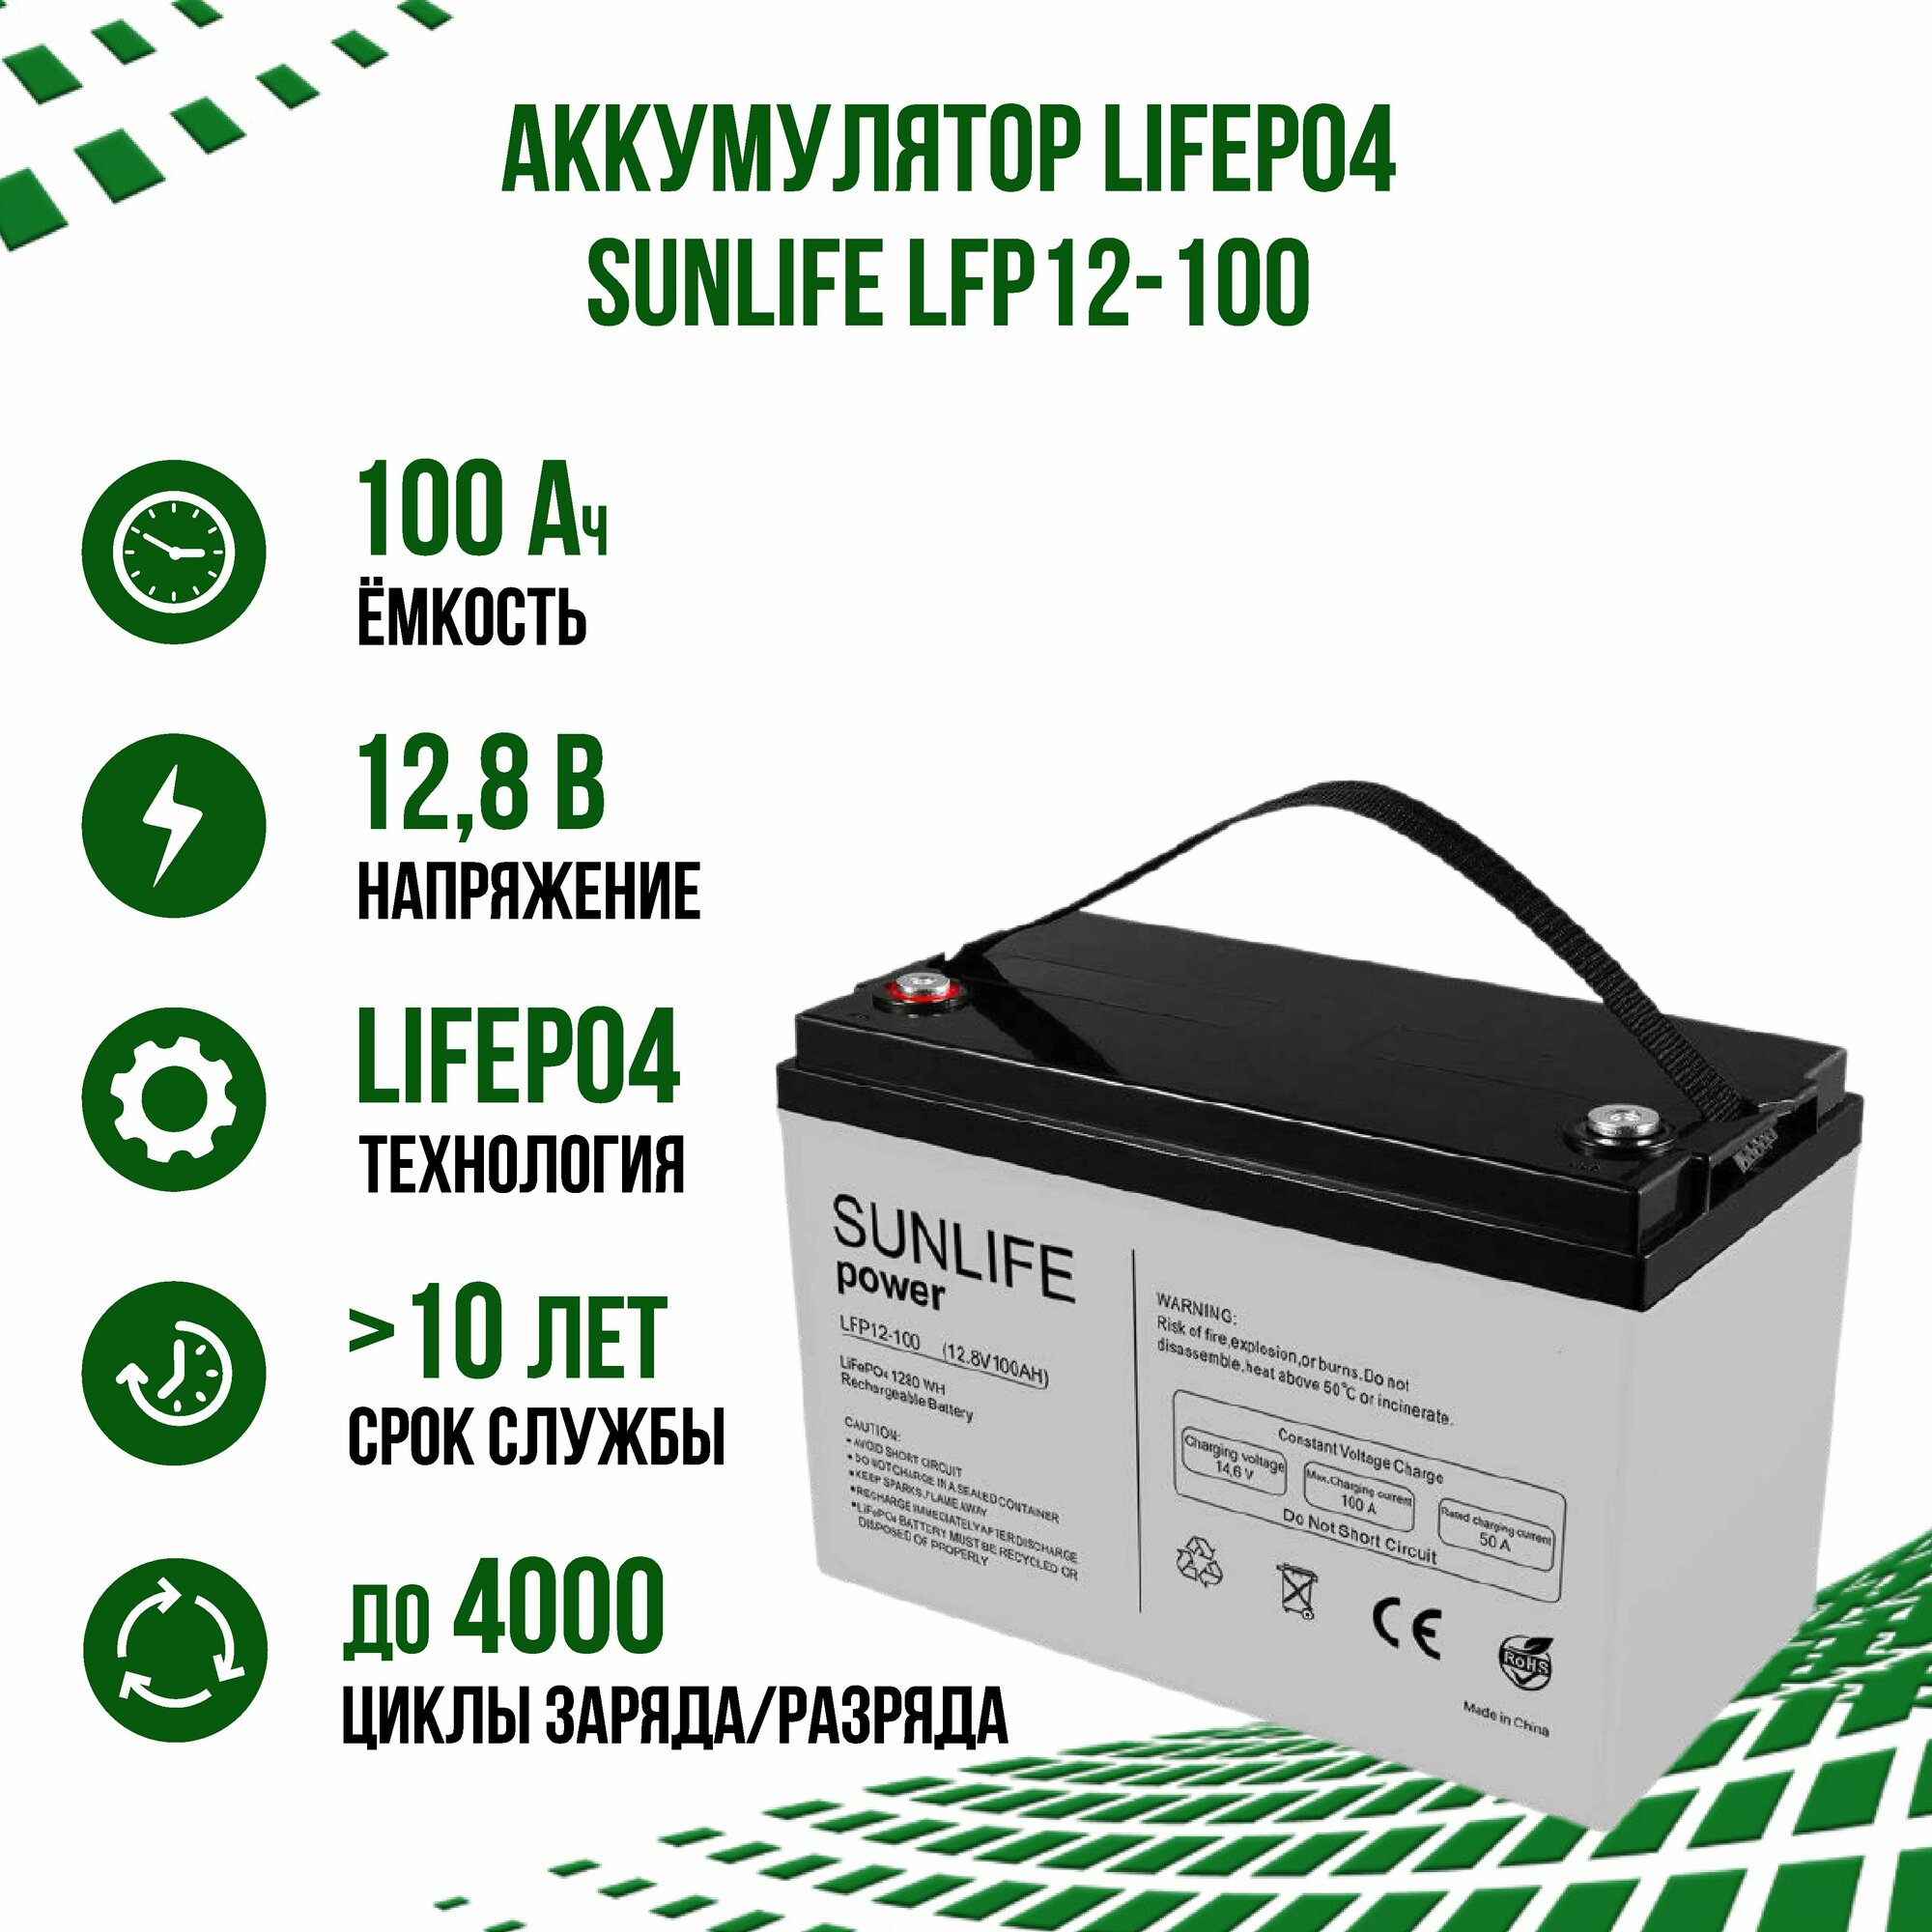 Литий-ионный аккумулятор LiFePO4 SUNLIFE LFP12-100 12В 100Ач (12V 100Ah) с Bluetooth для ИБП автономных систем электроснабжения лодочных моторов автодомов/прицепов